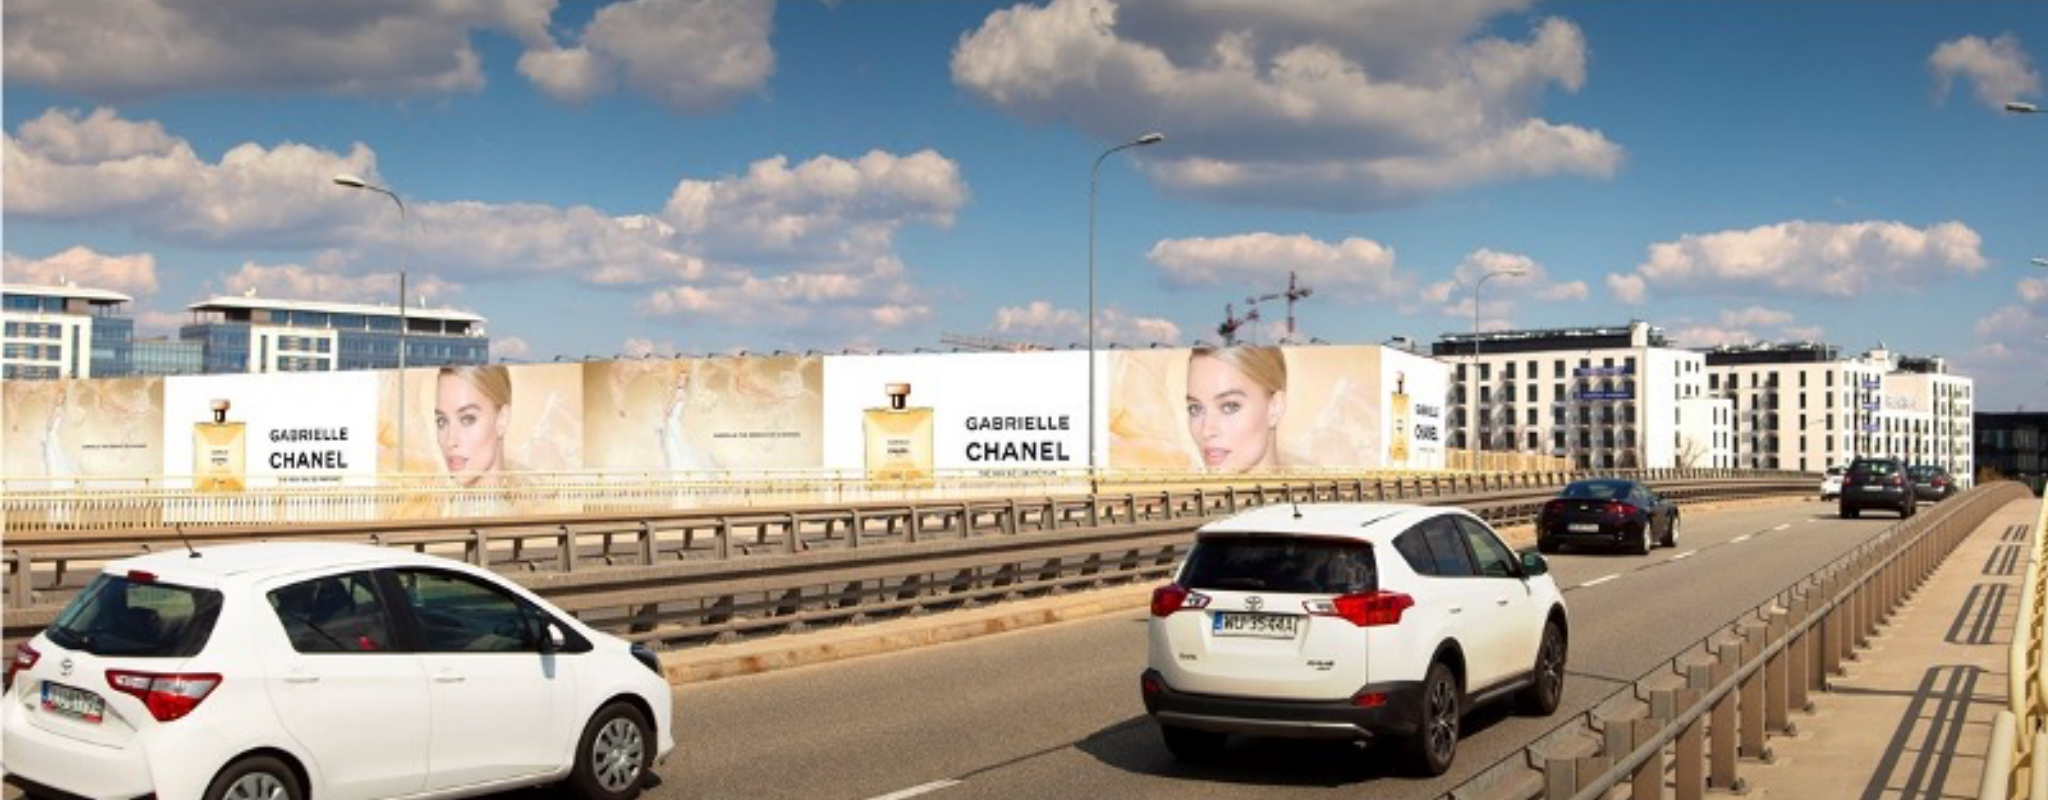 reklama na Marynarskiej w Warszawie